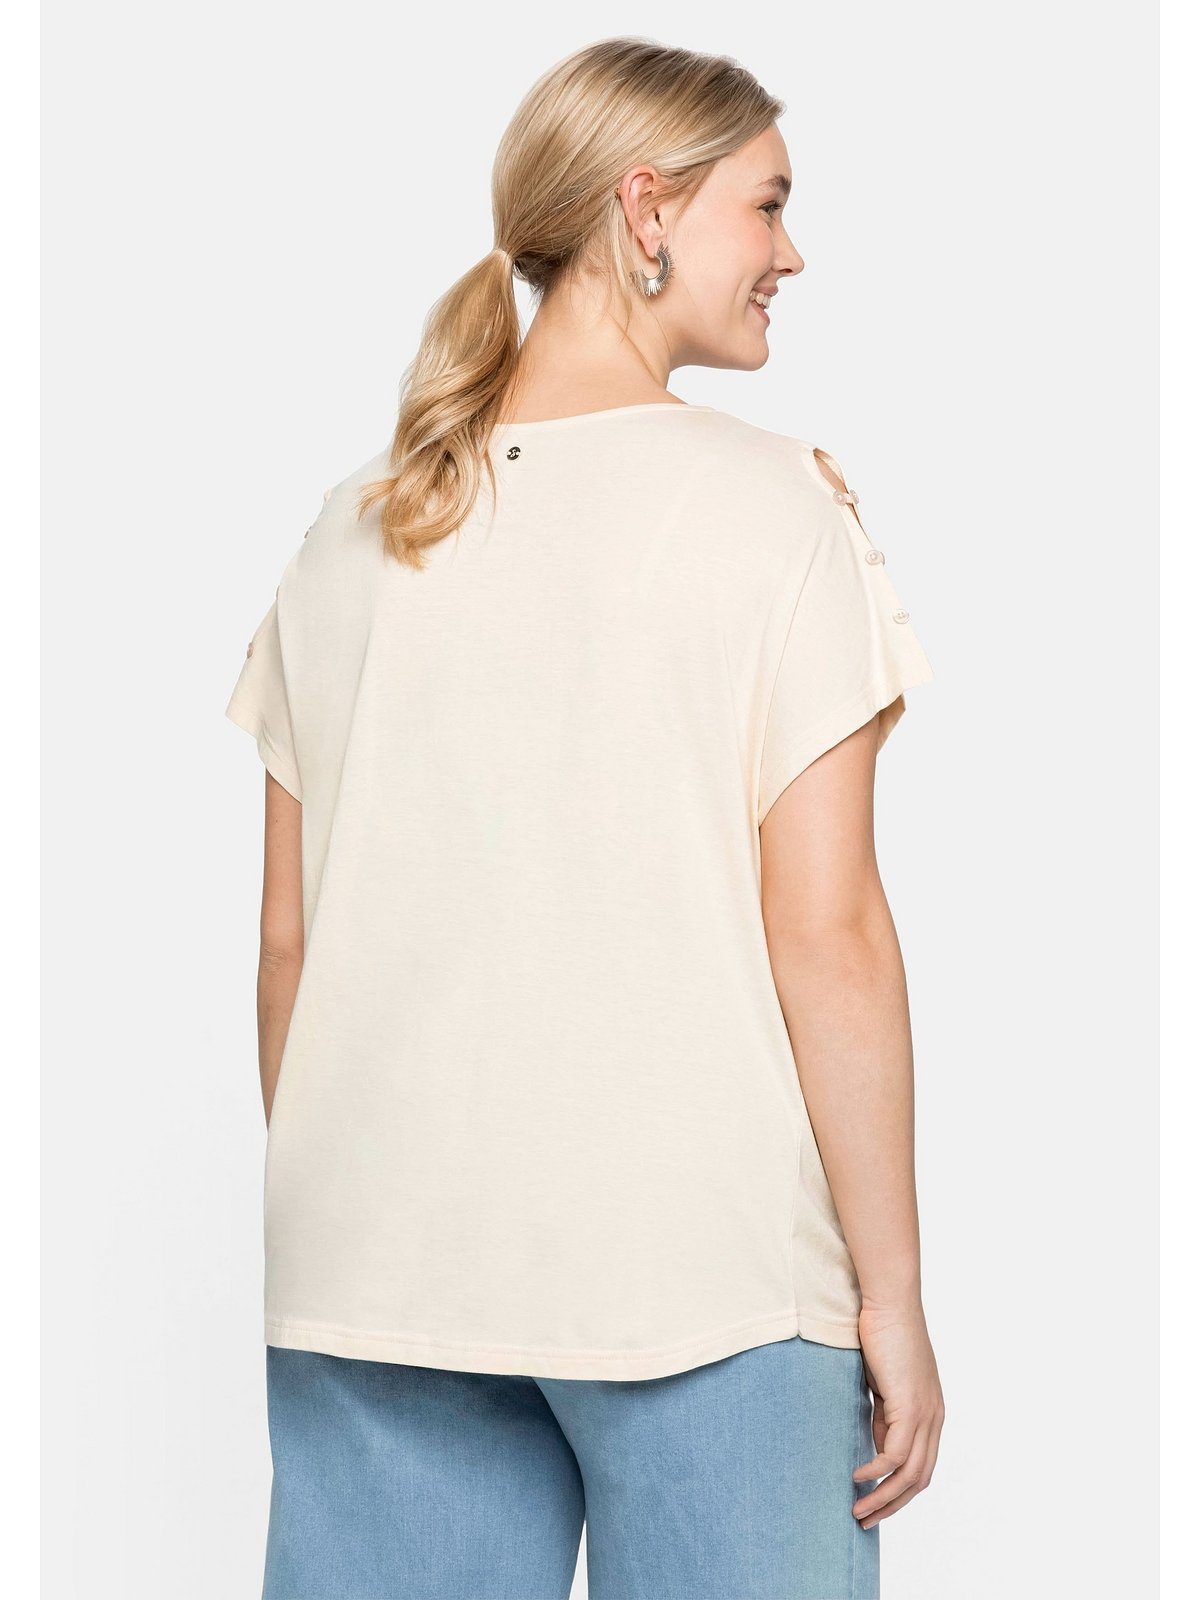 Schulterpartie, Große A-Linie T-Shirt in offener natur mit Größen leichter Sheego